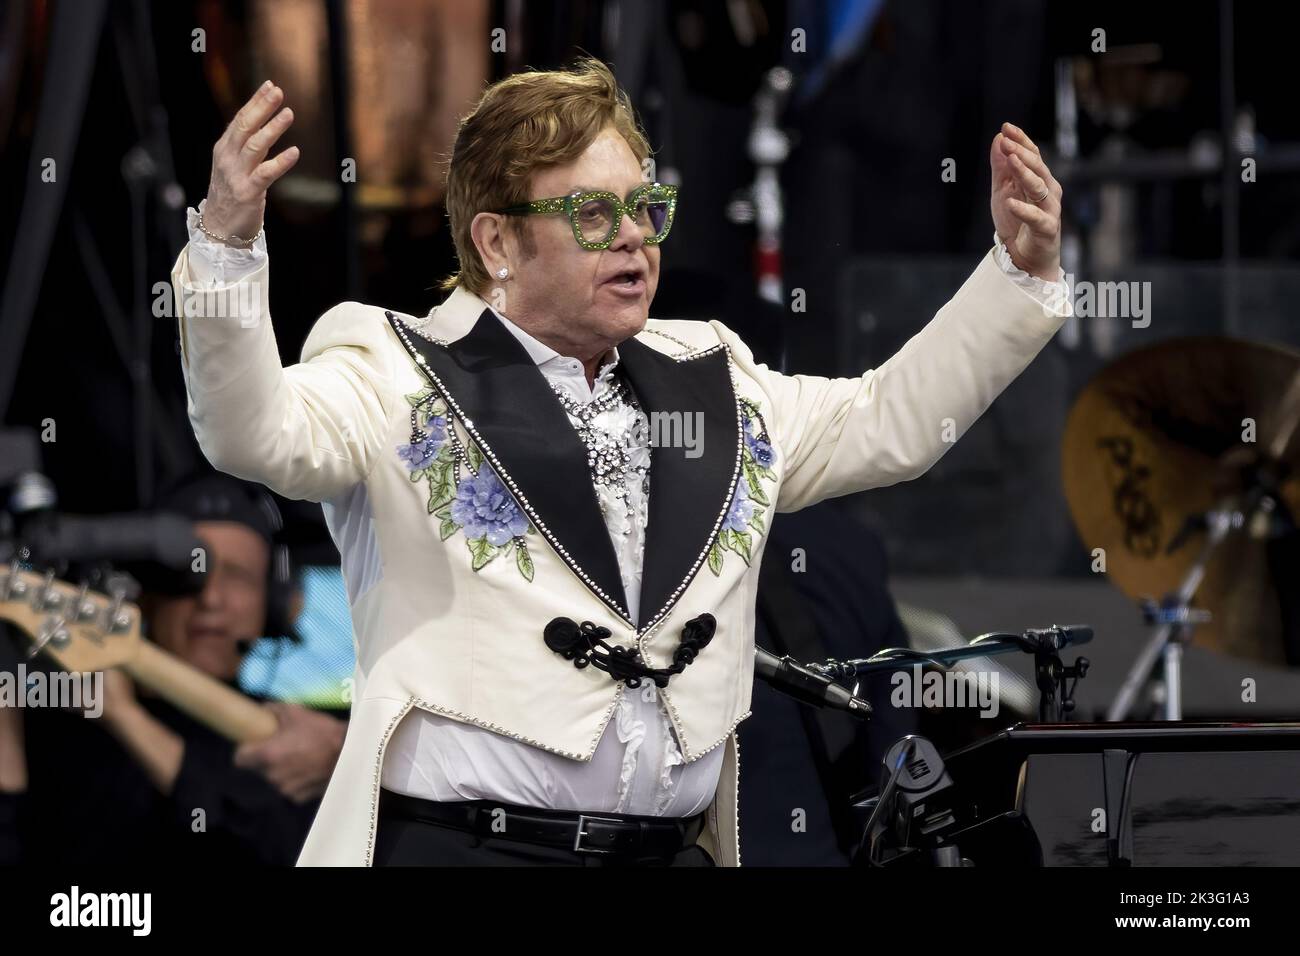 LONDRES, ANGLETERRE : Elton John se produit au British Summertime Festival lors de sa tournée Farewell Yellow Brick Road à Hyde Park. Avec: Elton John où: Londres, Royaume-Uni quand: 24 juin 2022 crédit: Neil Lupin/WENN Banque D'Images